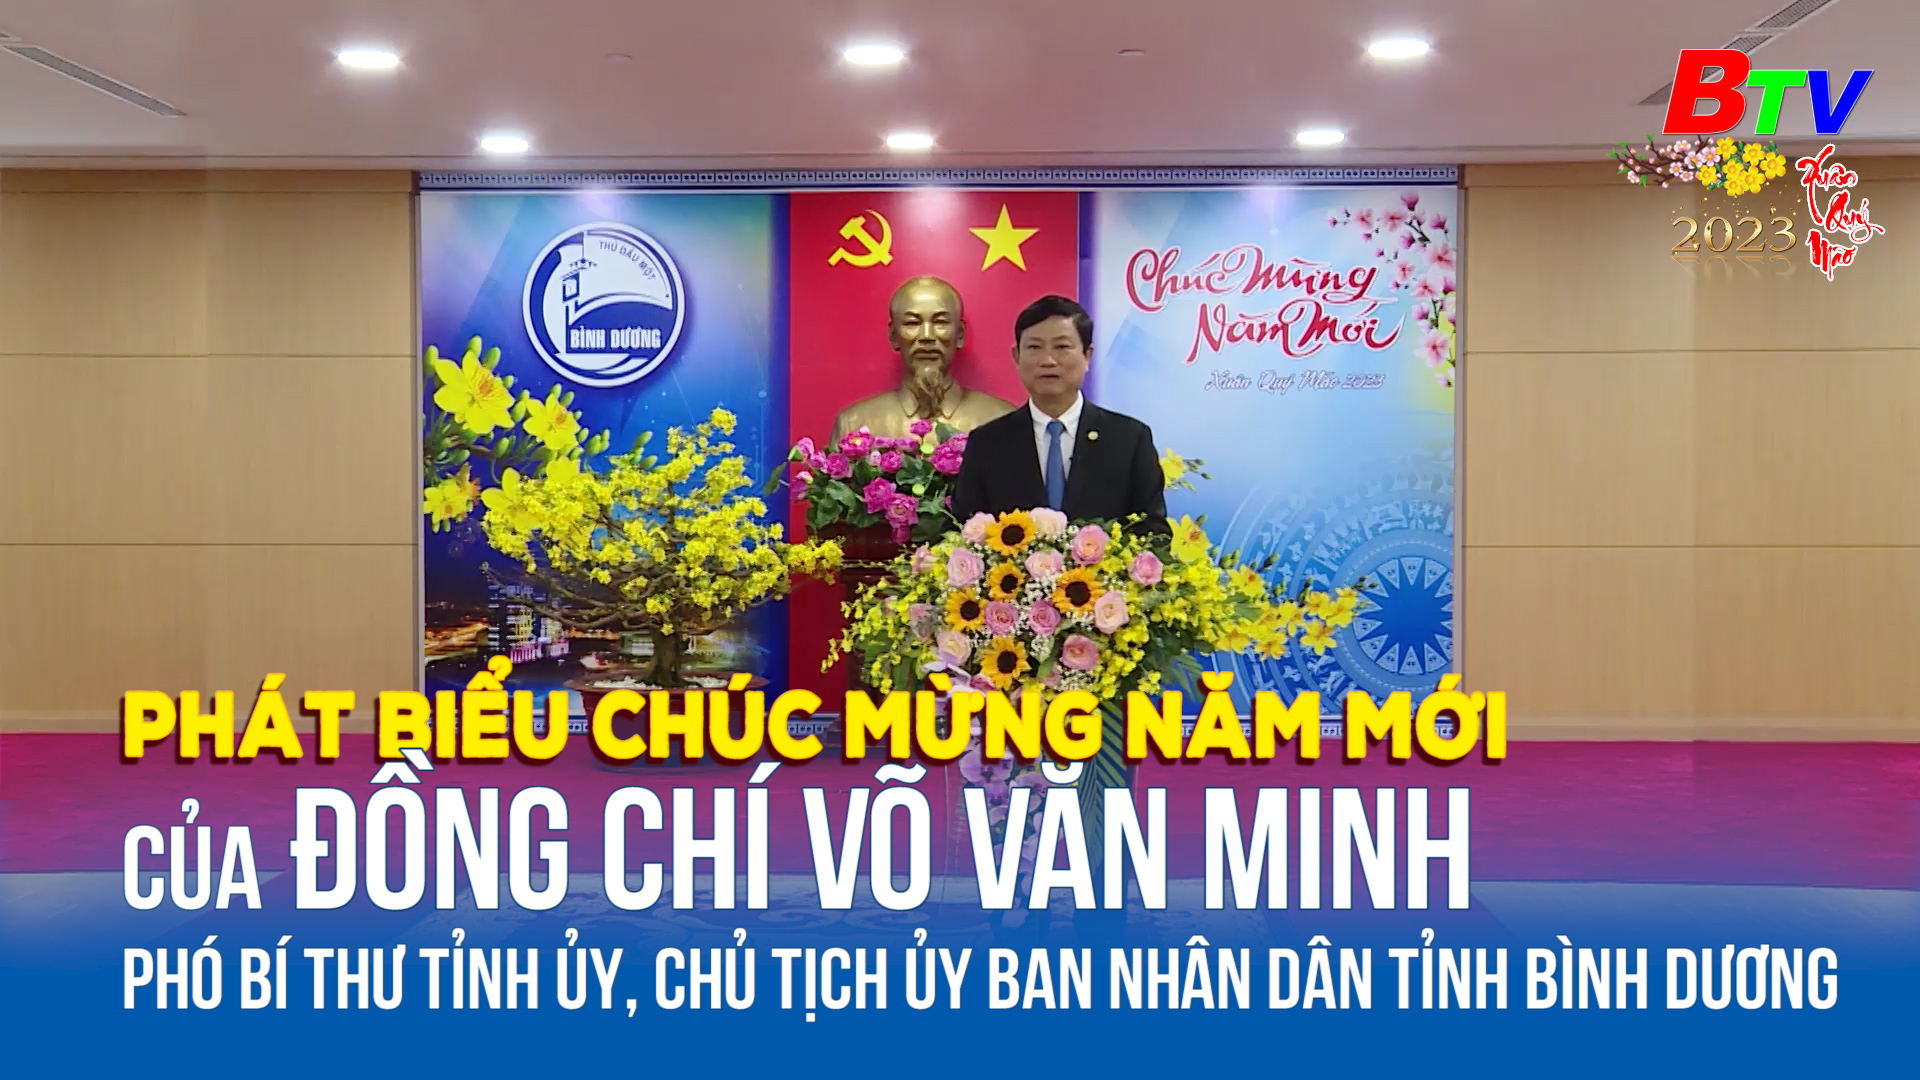 Phát biểu chúc mừng năm mới của đồng chí Võ Văn Minh - Phó Bí thư Tỉnh Ủy, Chủ tịch Ủy ban Nhân dân tỉnh Bình Dương